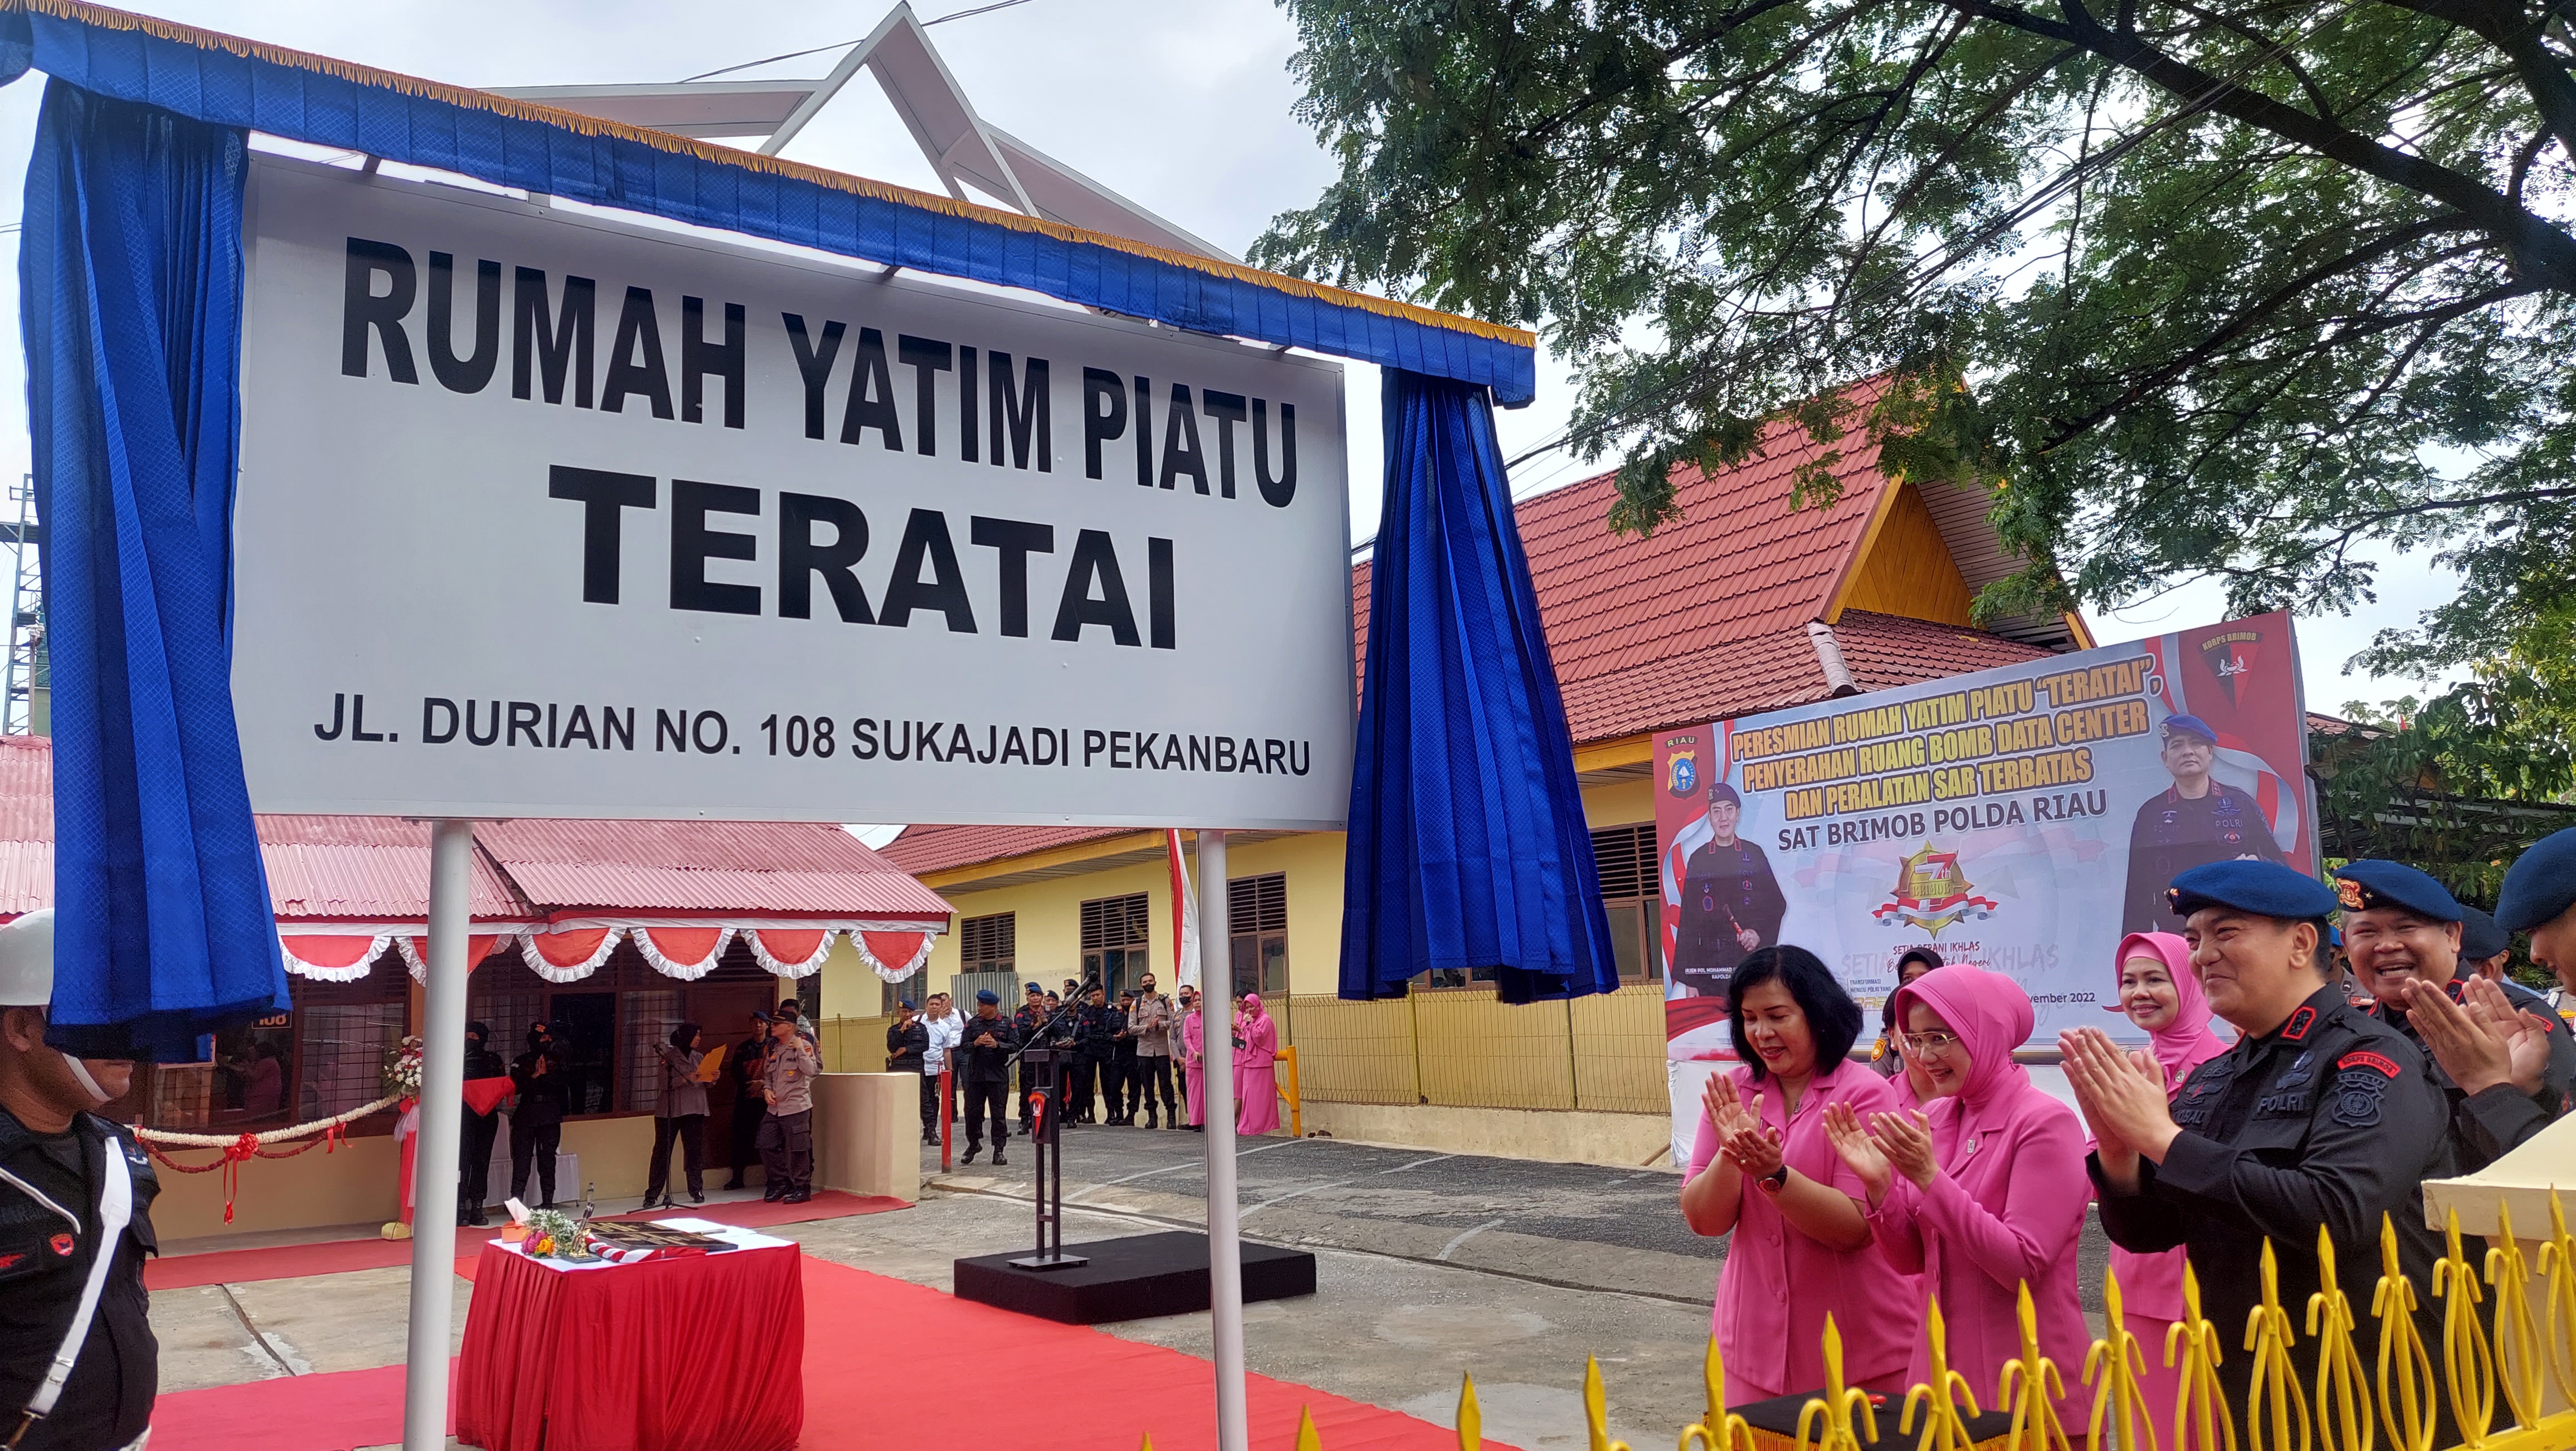 Korps Brimob Polda Riau Punya Rumah Yatim Piatu